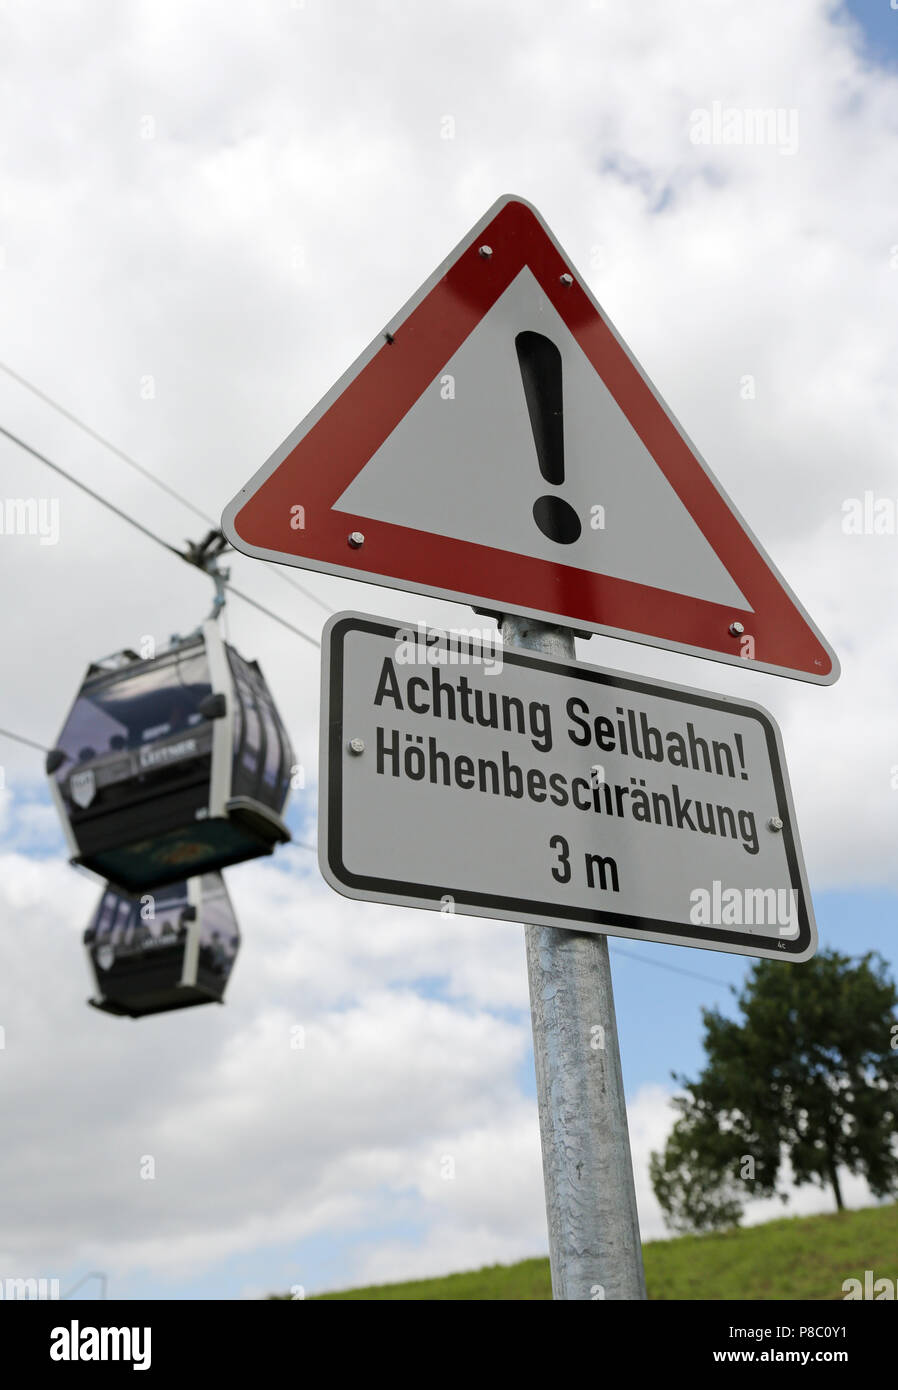 Berlín, Alemania, el signo - Atención teleférico - delante de dos góndolas del teleférico Foto de stock